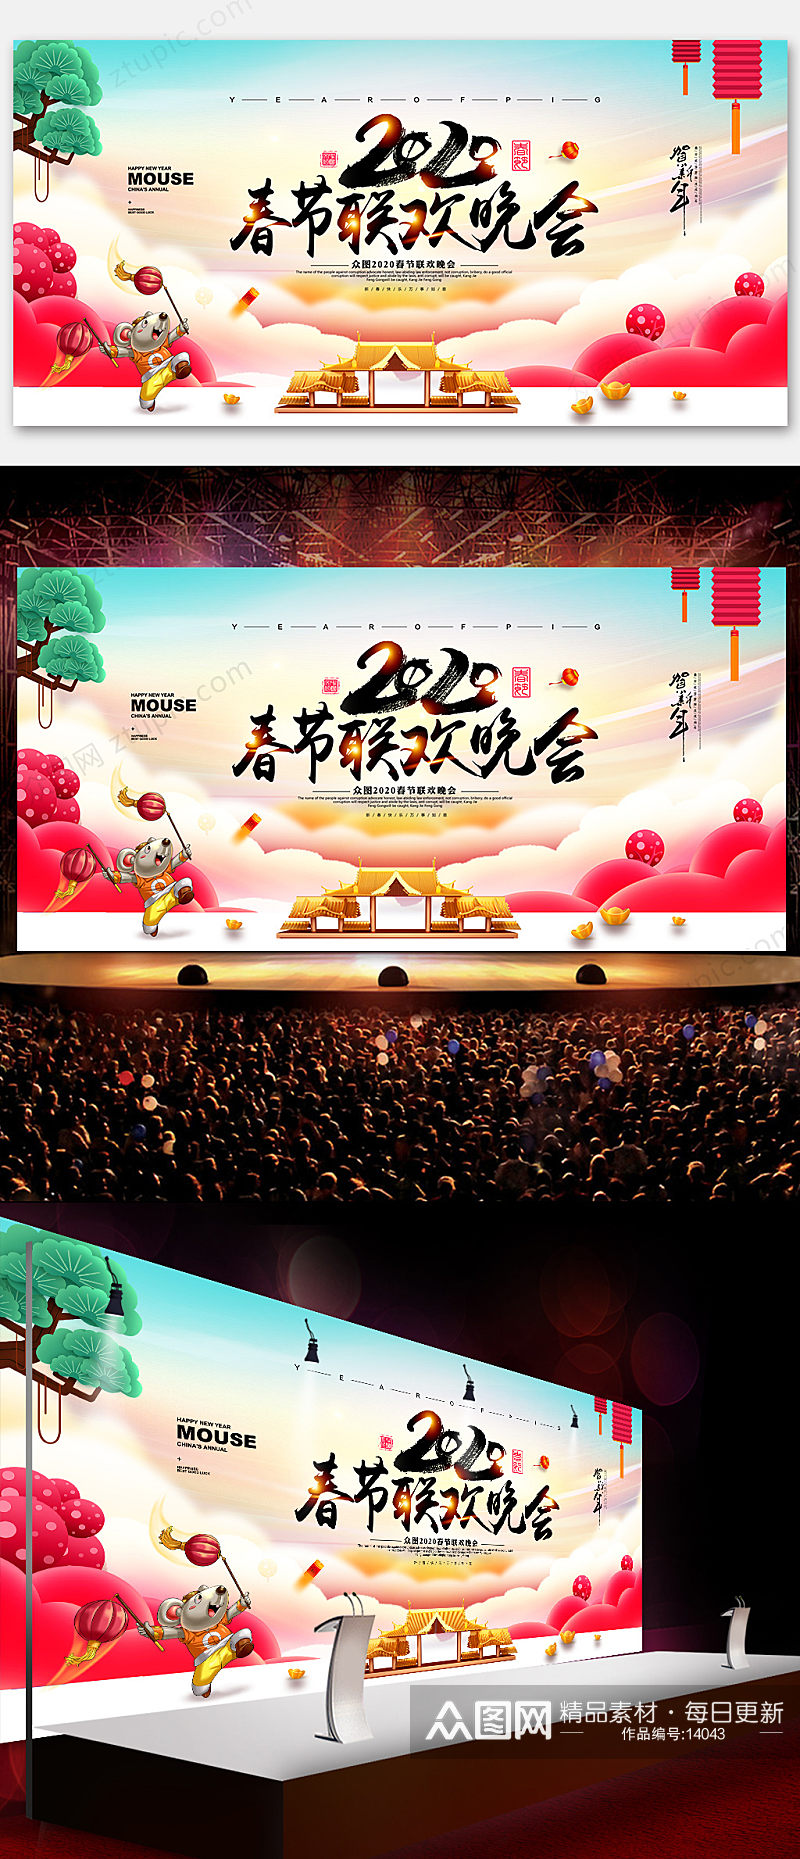 春节联欢晚会海报展板素材